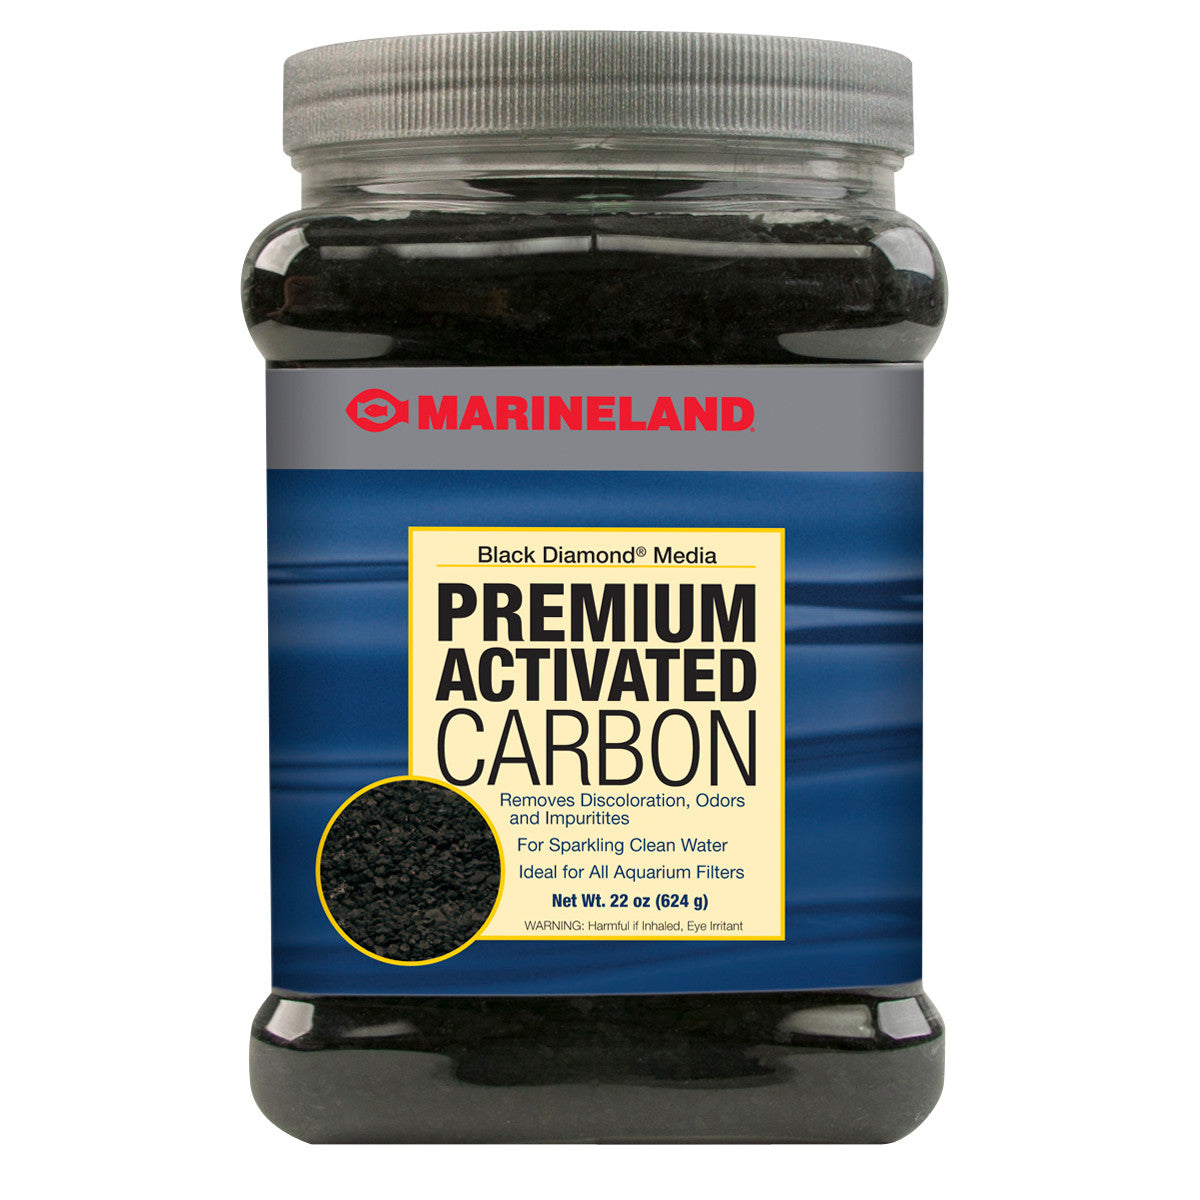 Marineland Black Diamond Premium Activated Carbon Media 22 oz